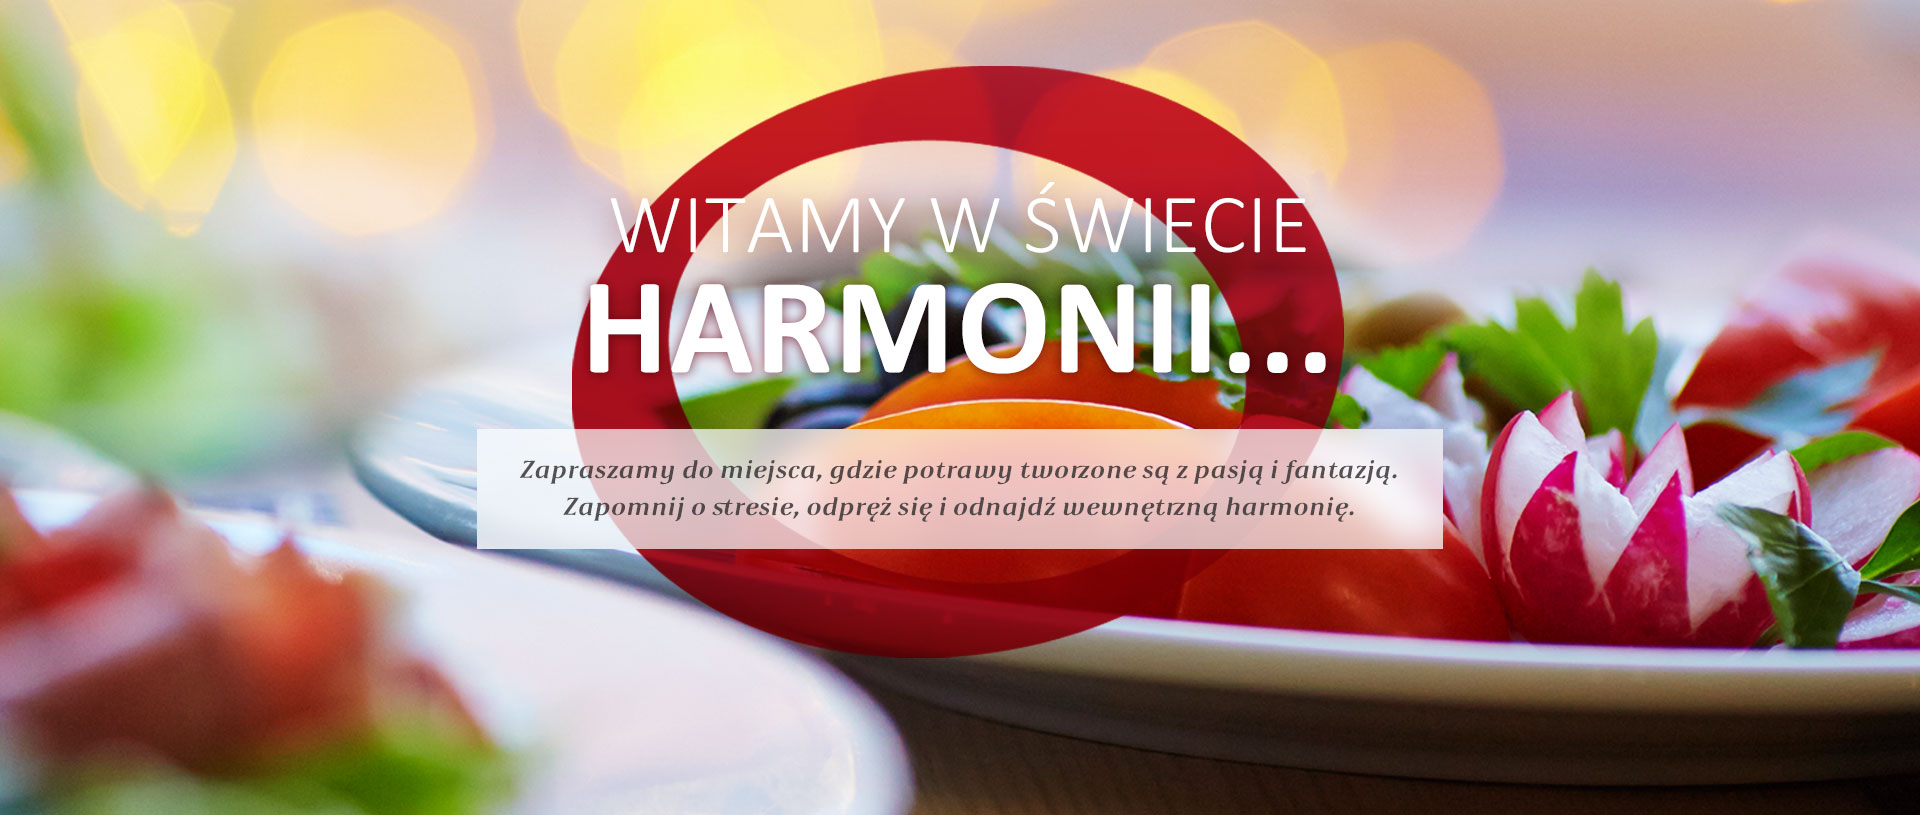 Restauracja Harmonia - Zdjęcie w sliderze nr 4